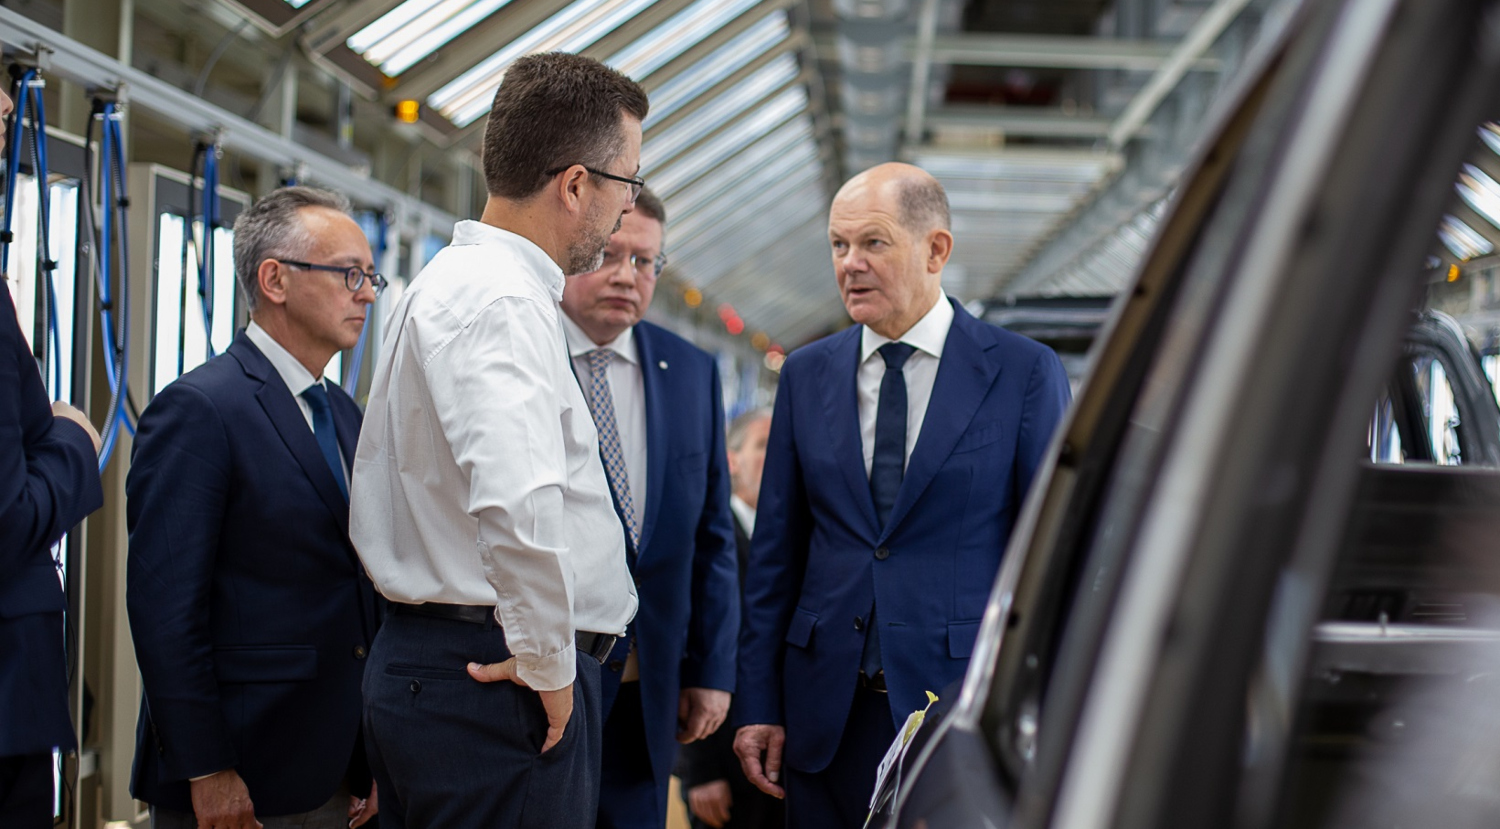 Planta Volkswagen visita de Olaf Scholz